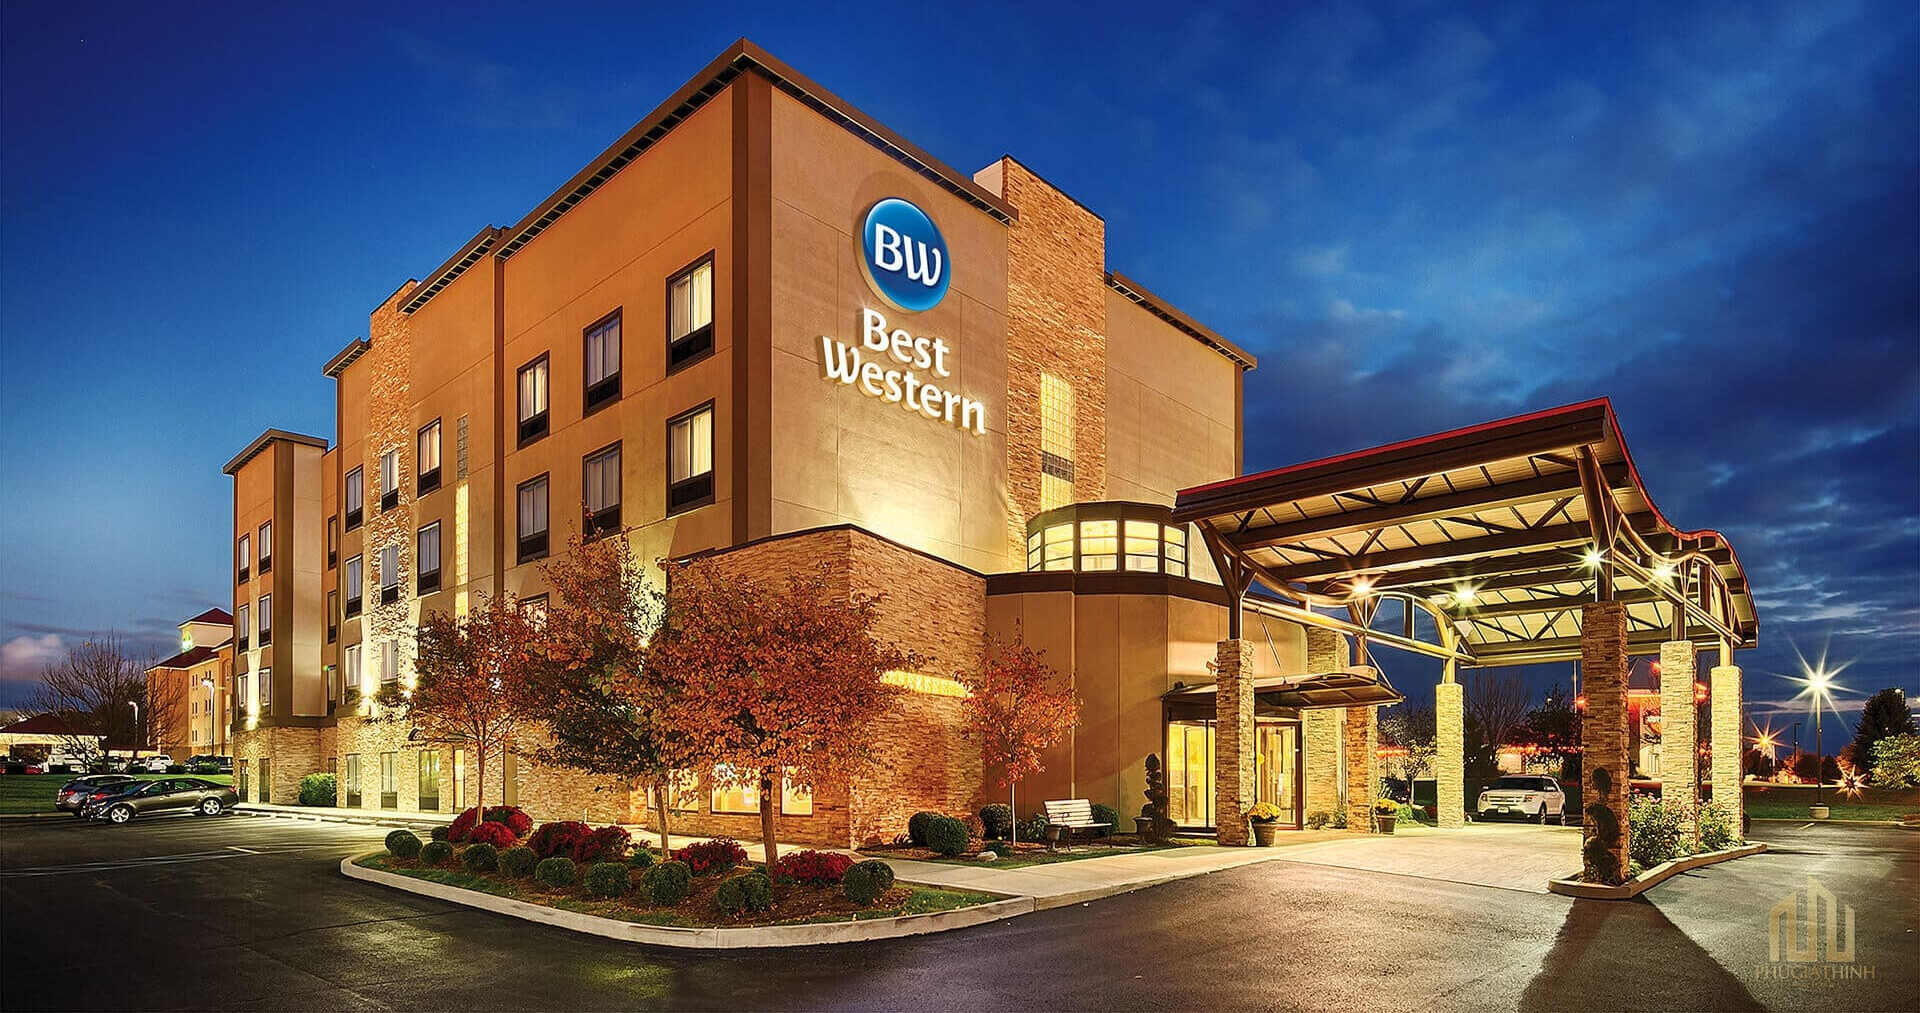 Best Western International – Tập đoàn quản lý khách sạn có quy mô lớn bậc nhất thế giới